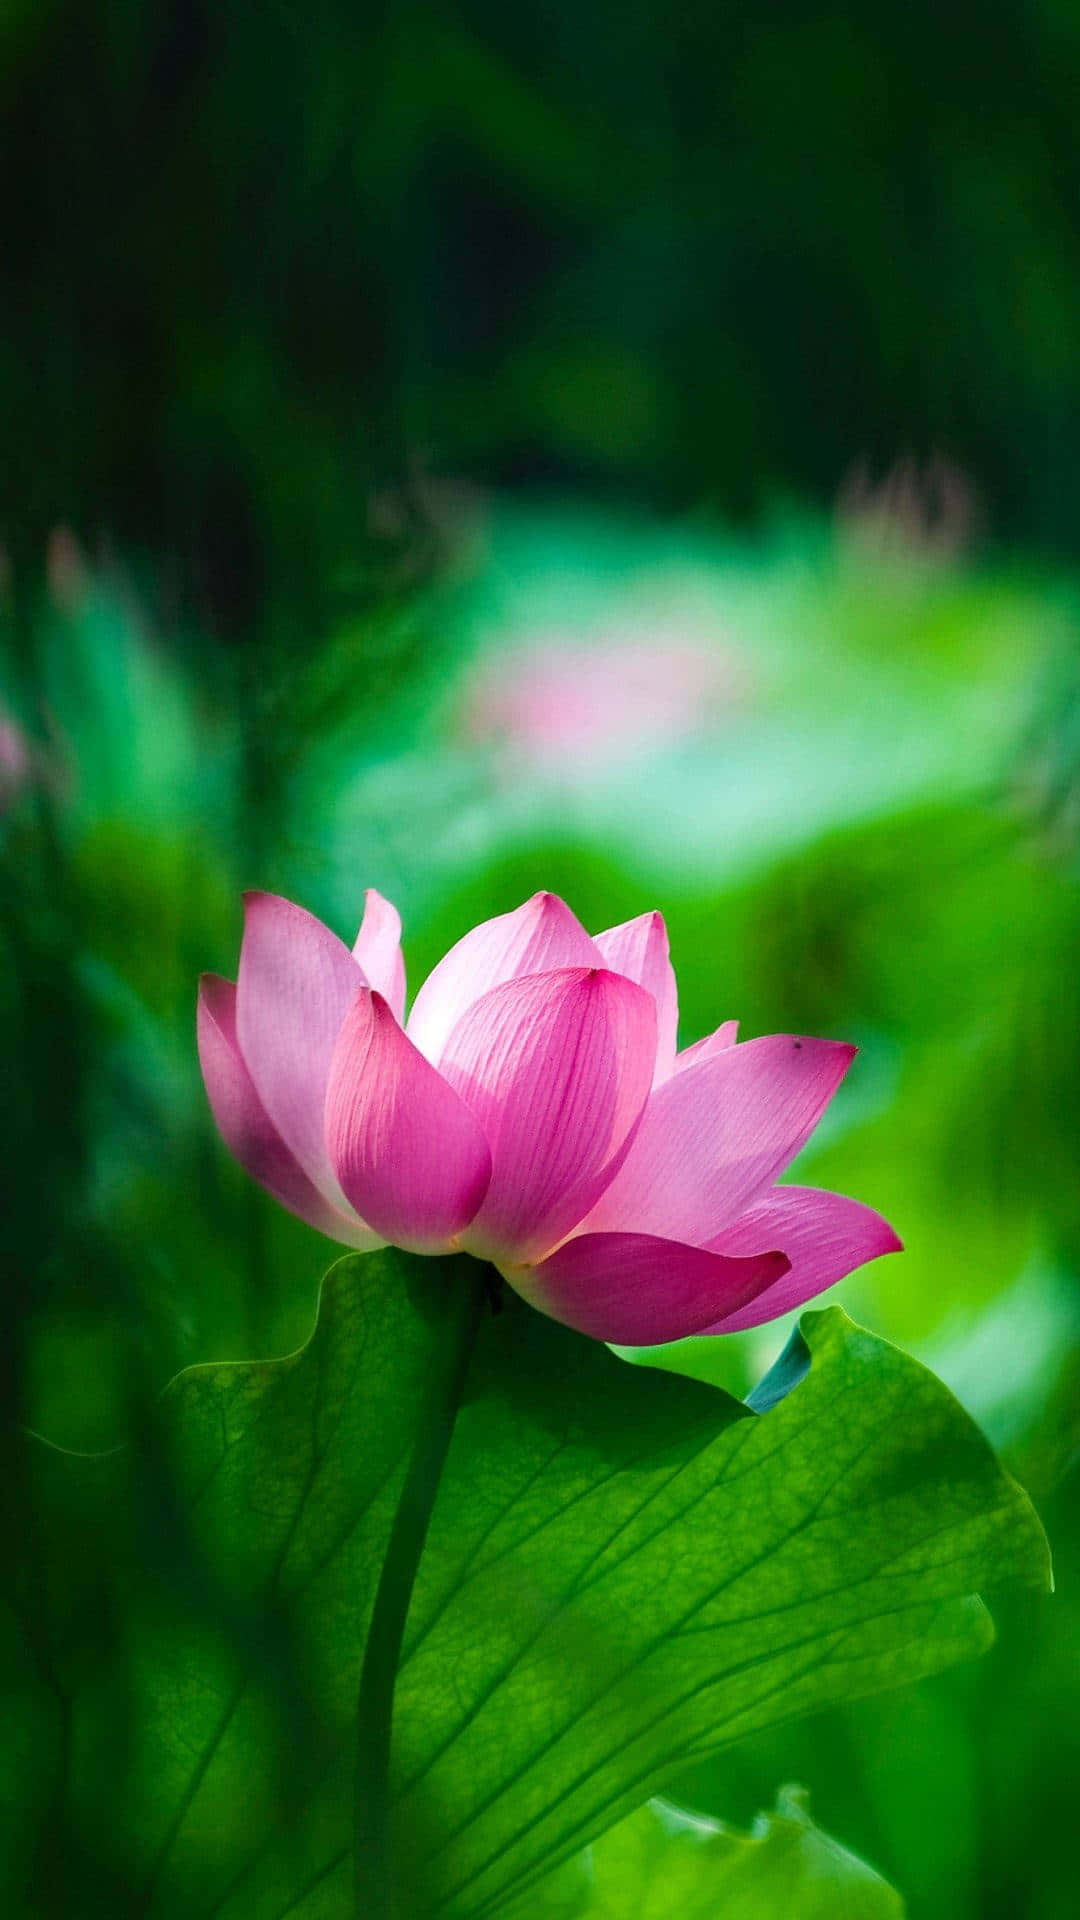 Ensmuk Lotusblomst, Der Blomstrer I Sit Naturlige Miljø.